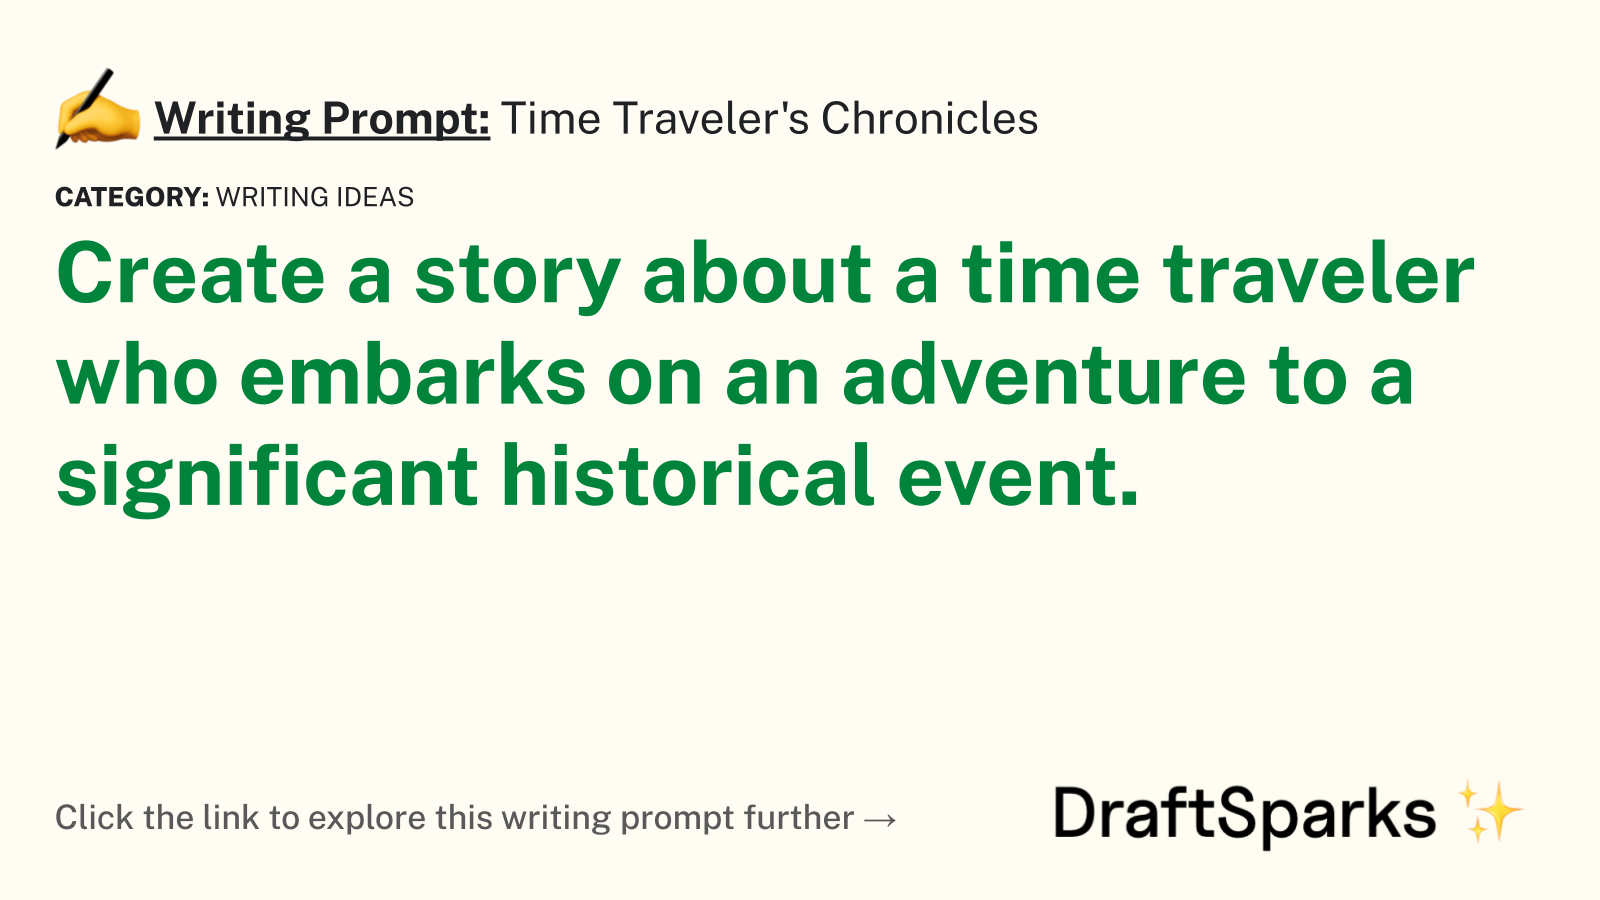 Time Traveler’s Chronicles